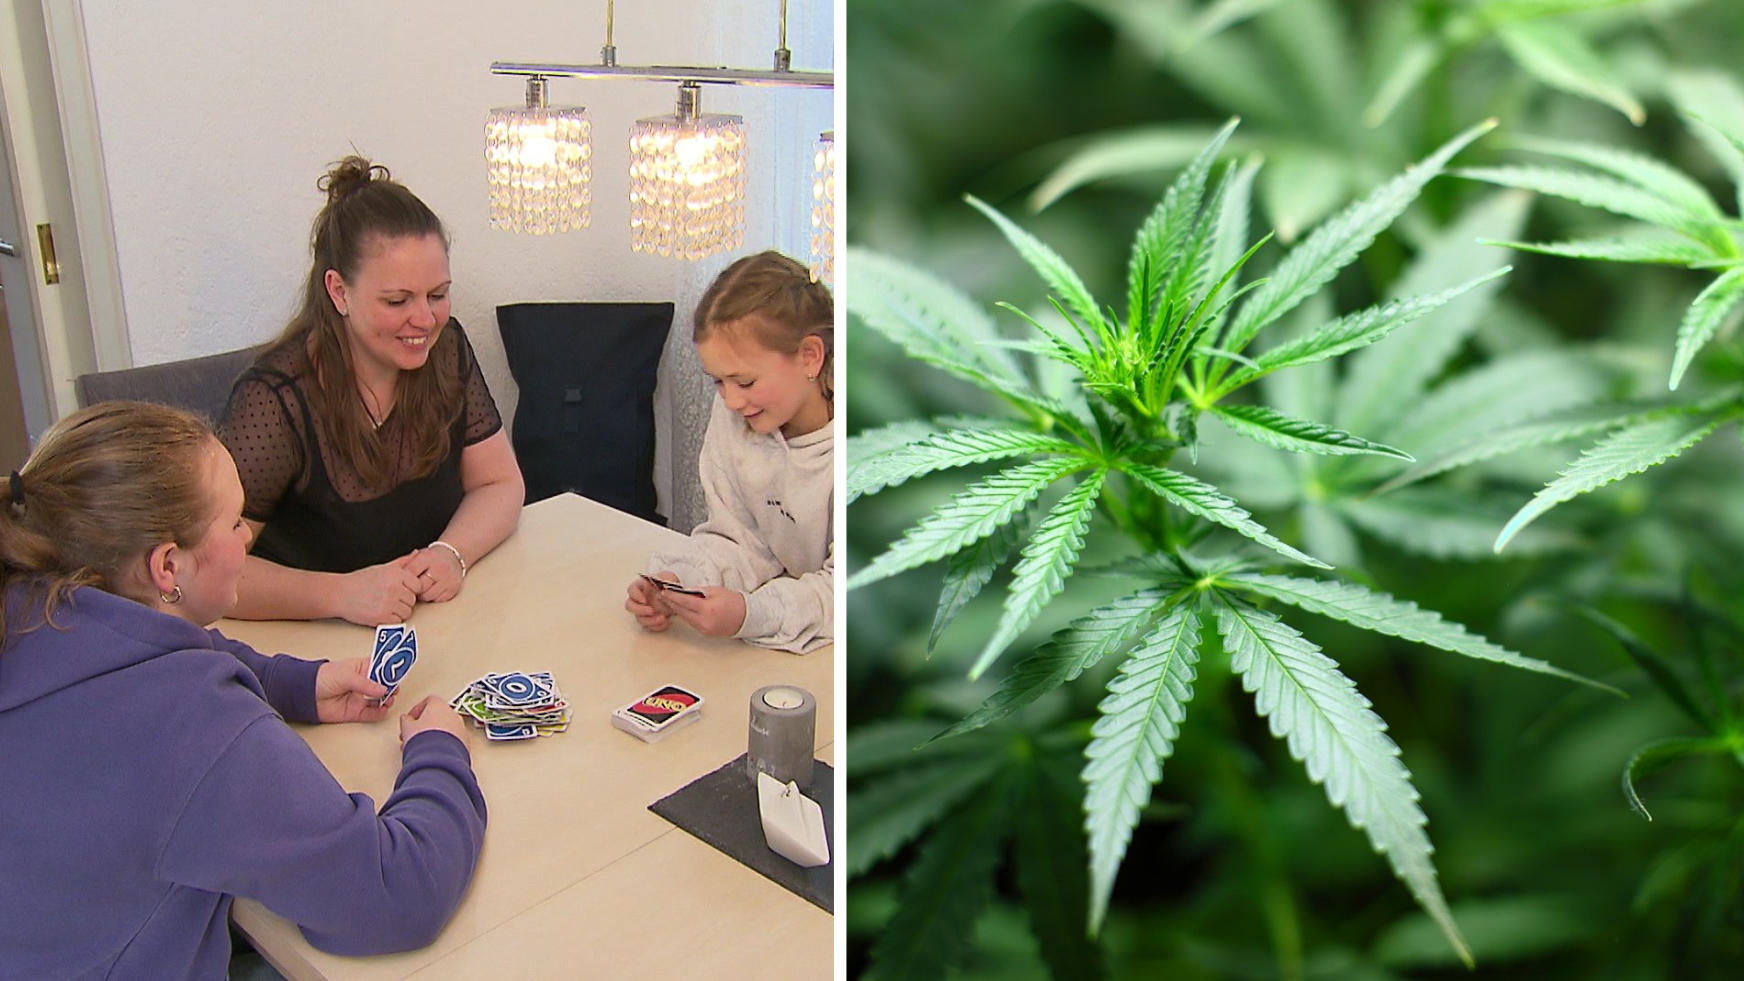 Cannabisbesitz wird legal - Mutter hofft auf Aufklärung! Neues Gesetz kommt im April